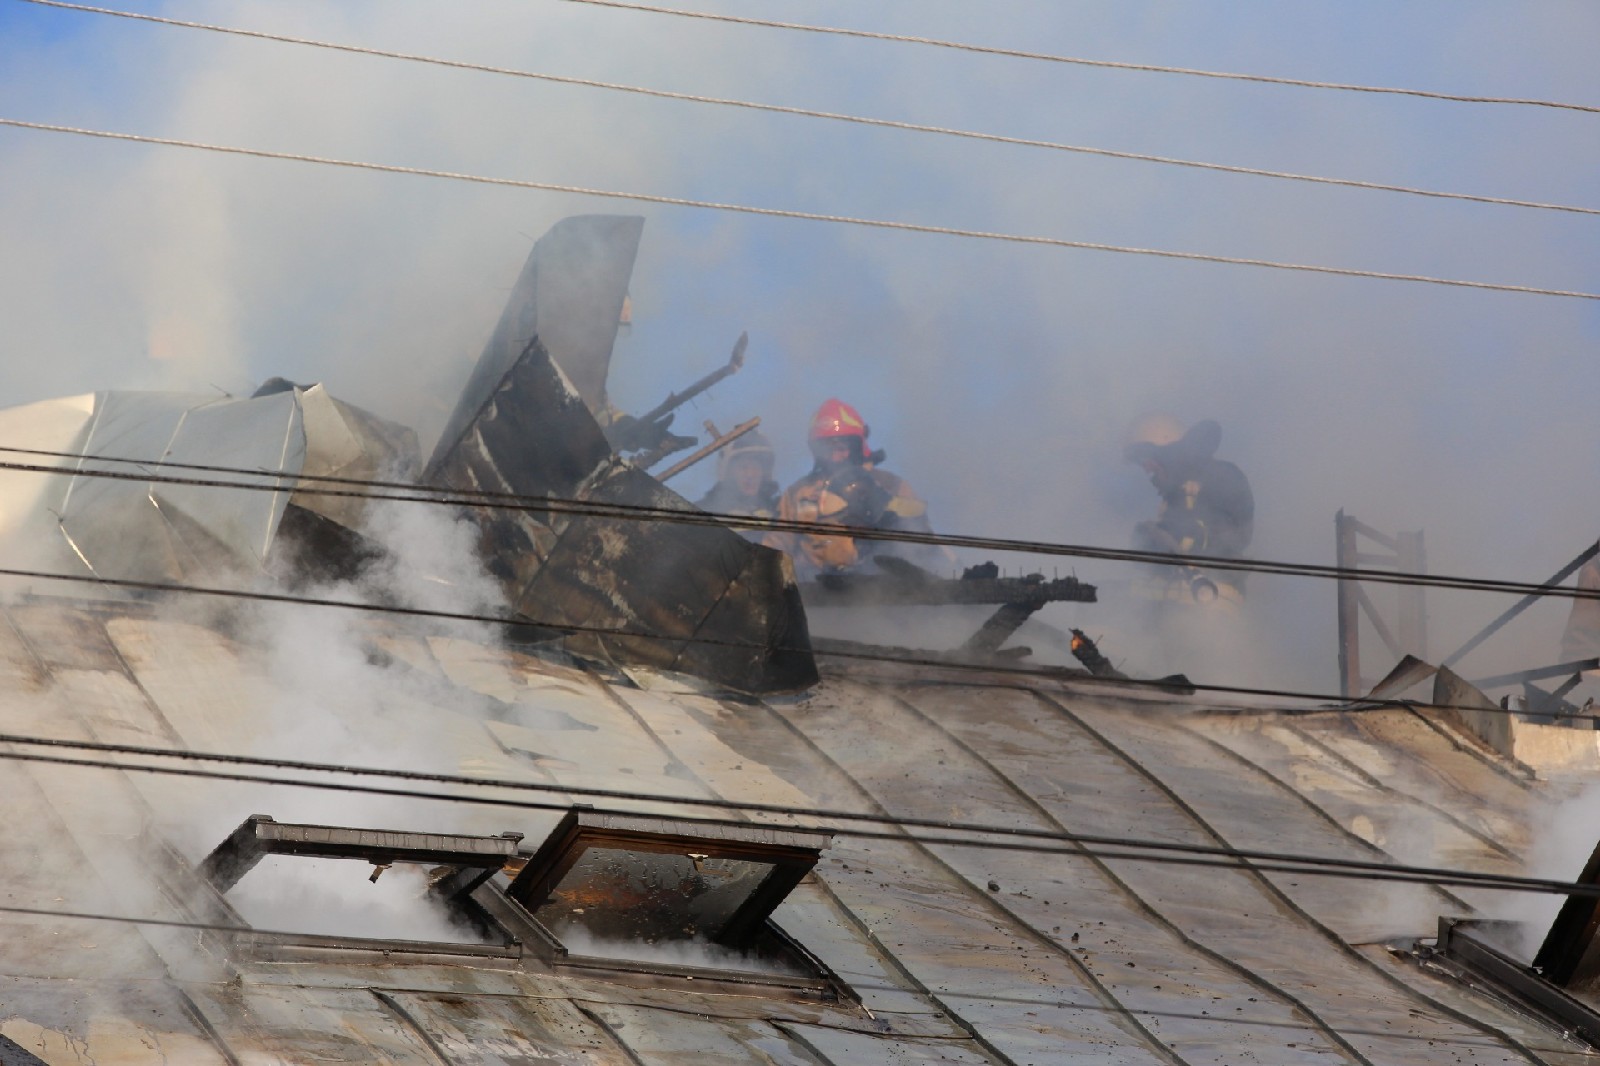 Спасали рабочих с крыши: в центре Ярославля вспыхнул крупный пожар. Фото, видео с места ЧП